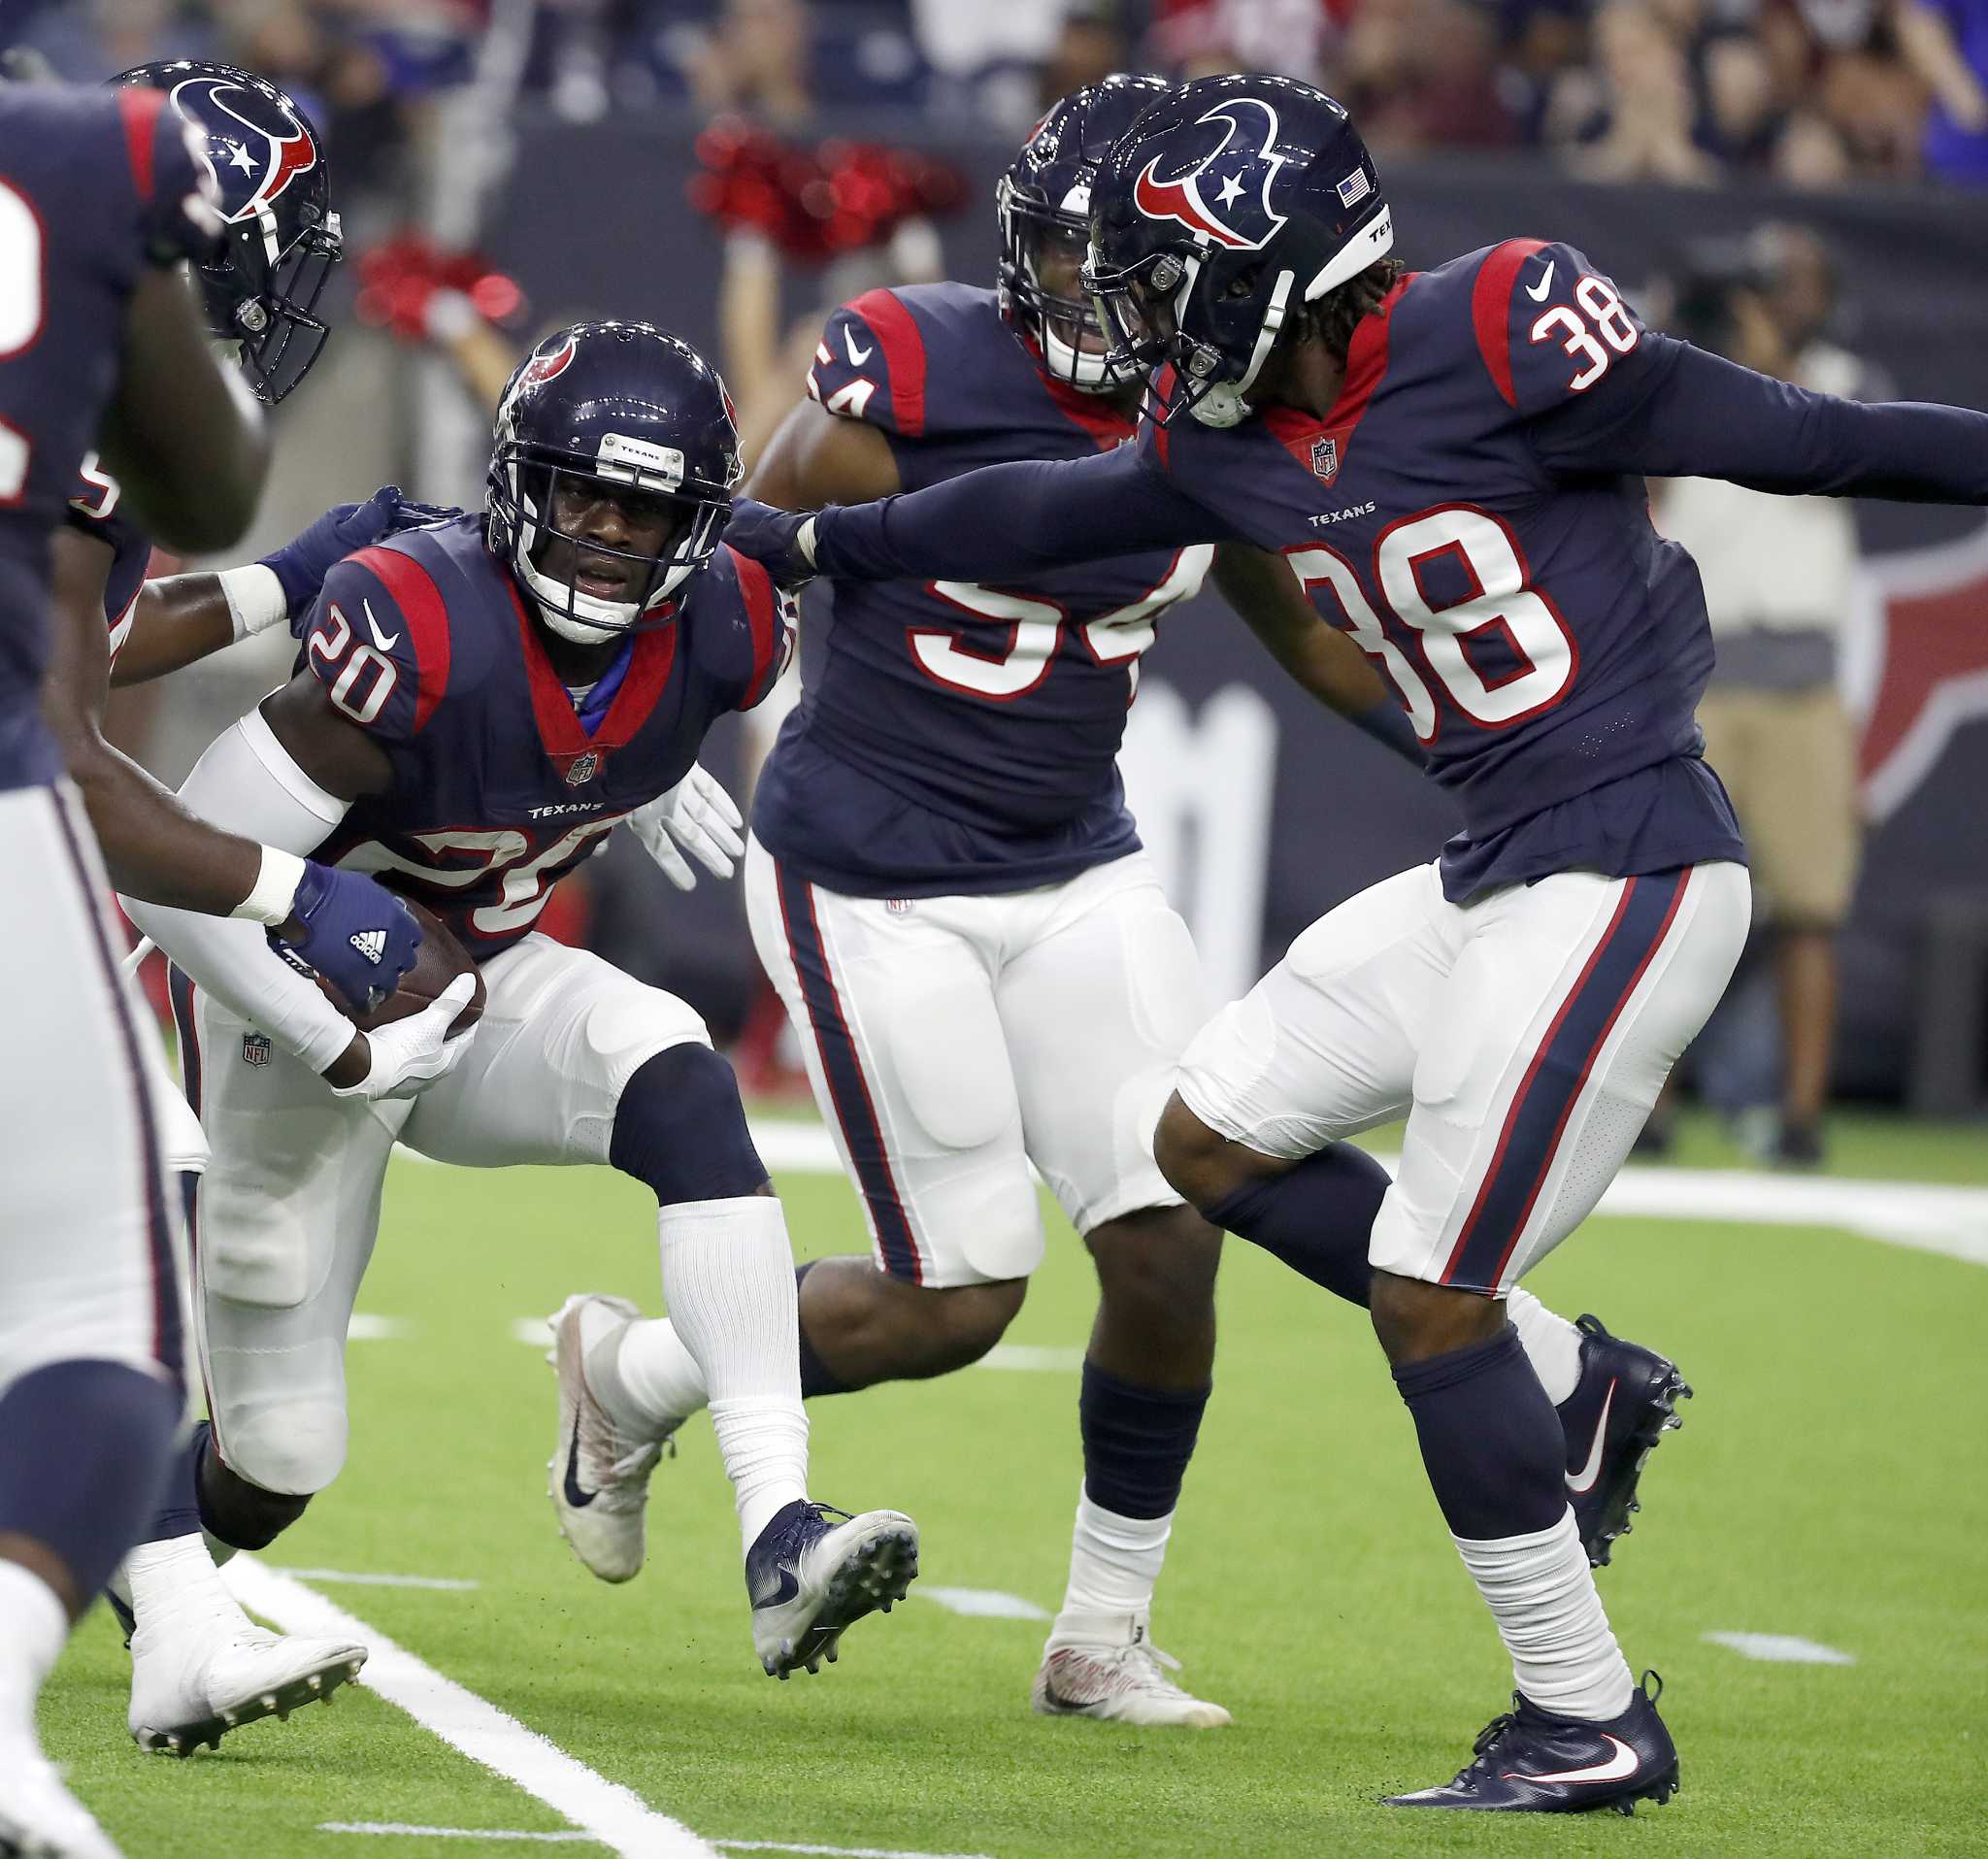 NFL: Watson looks sharp in Texans' win over 49ers